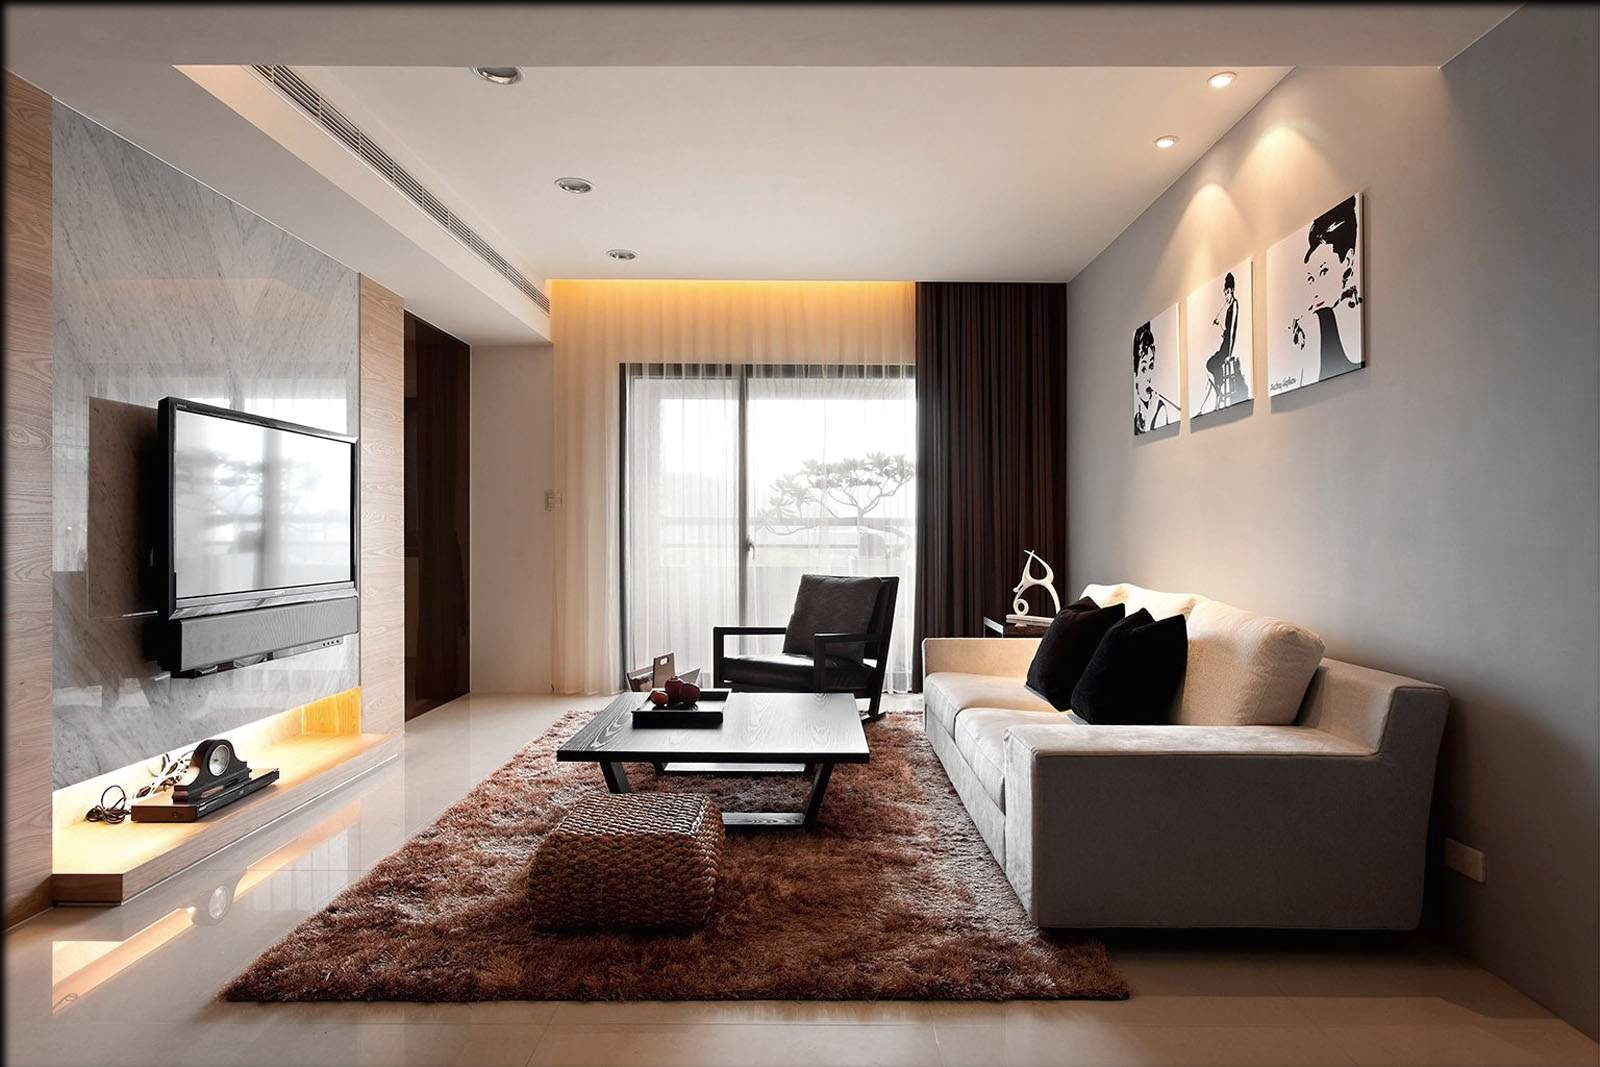 simple interior design ideas interior best interior design living rooms top on ideas room for XRCKXMA